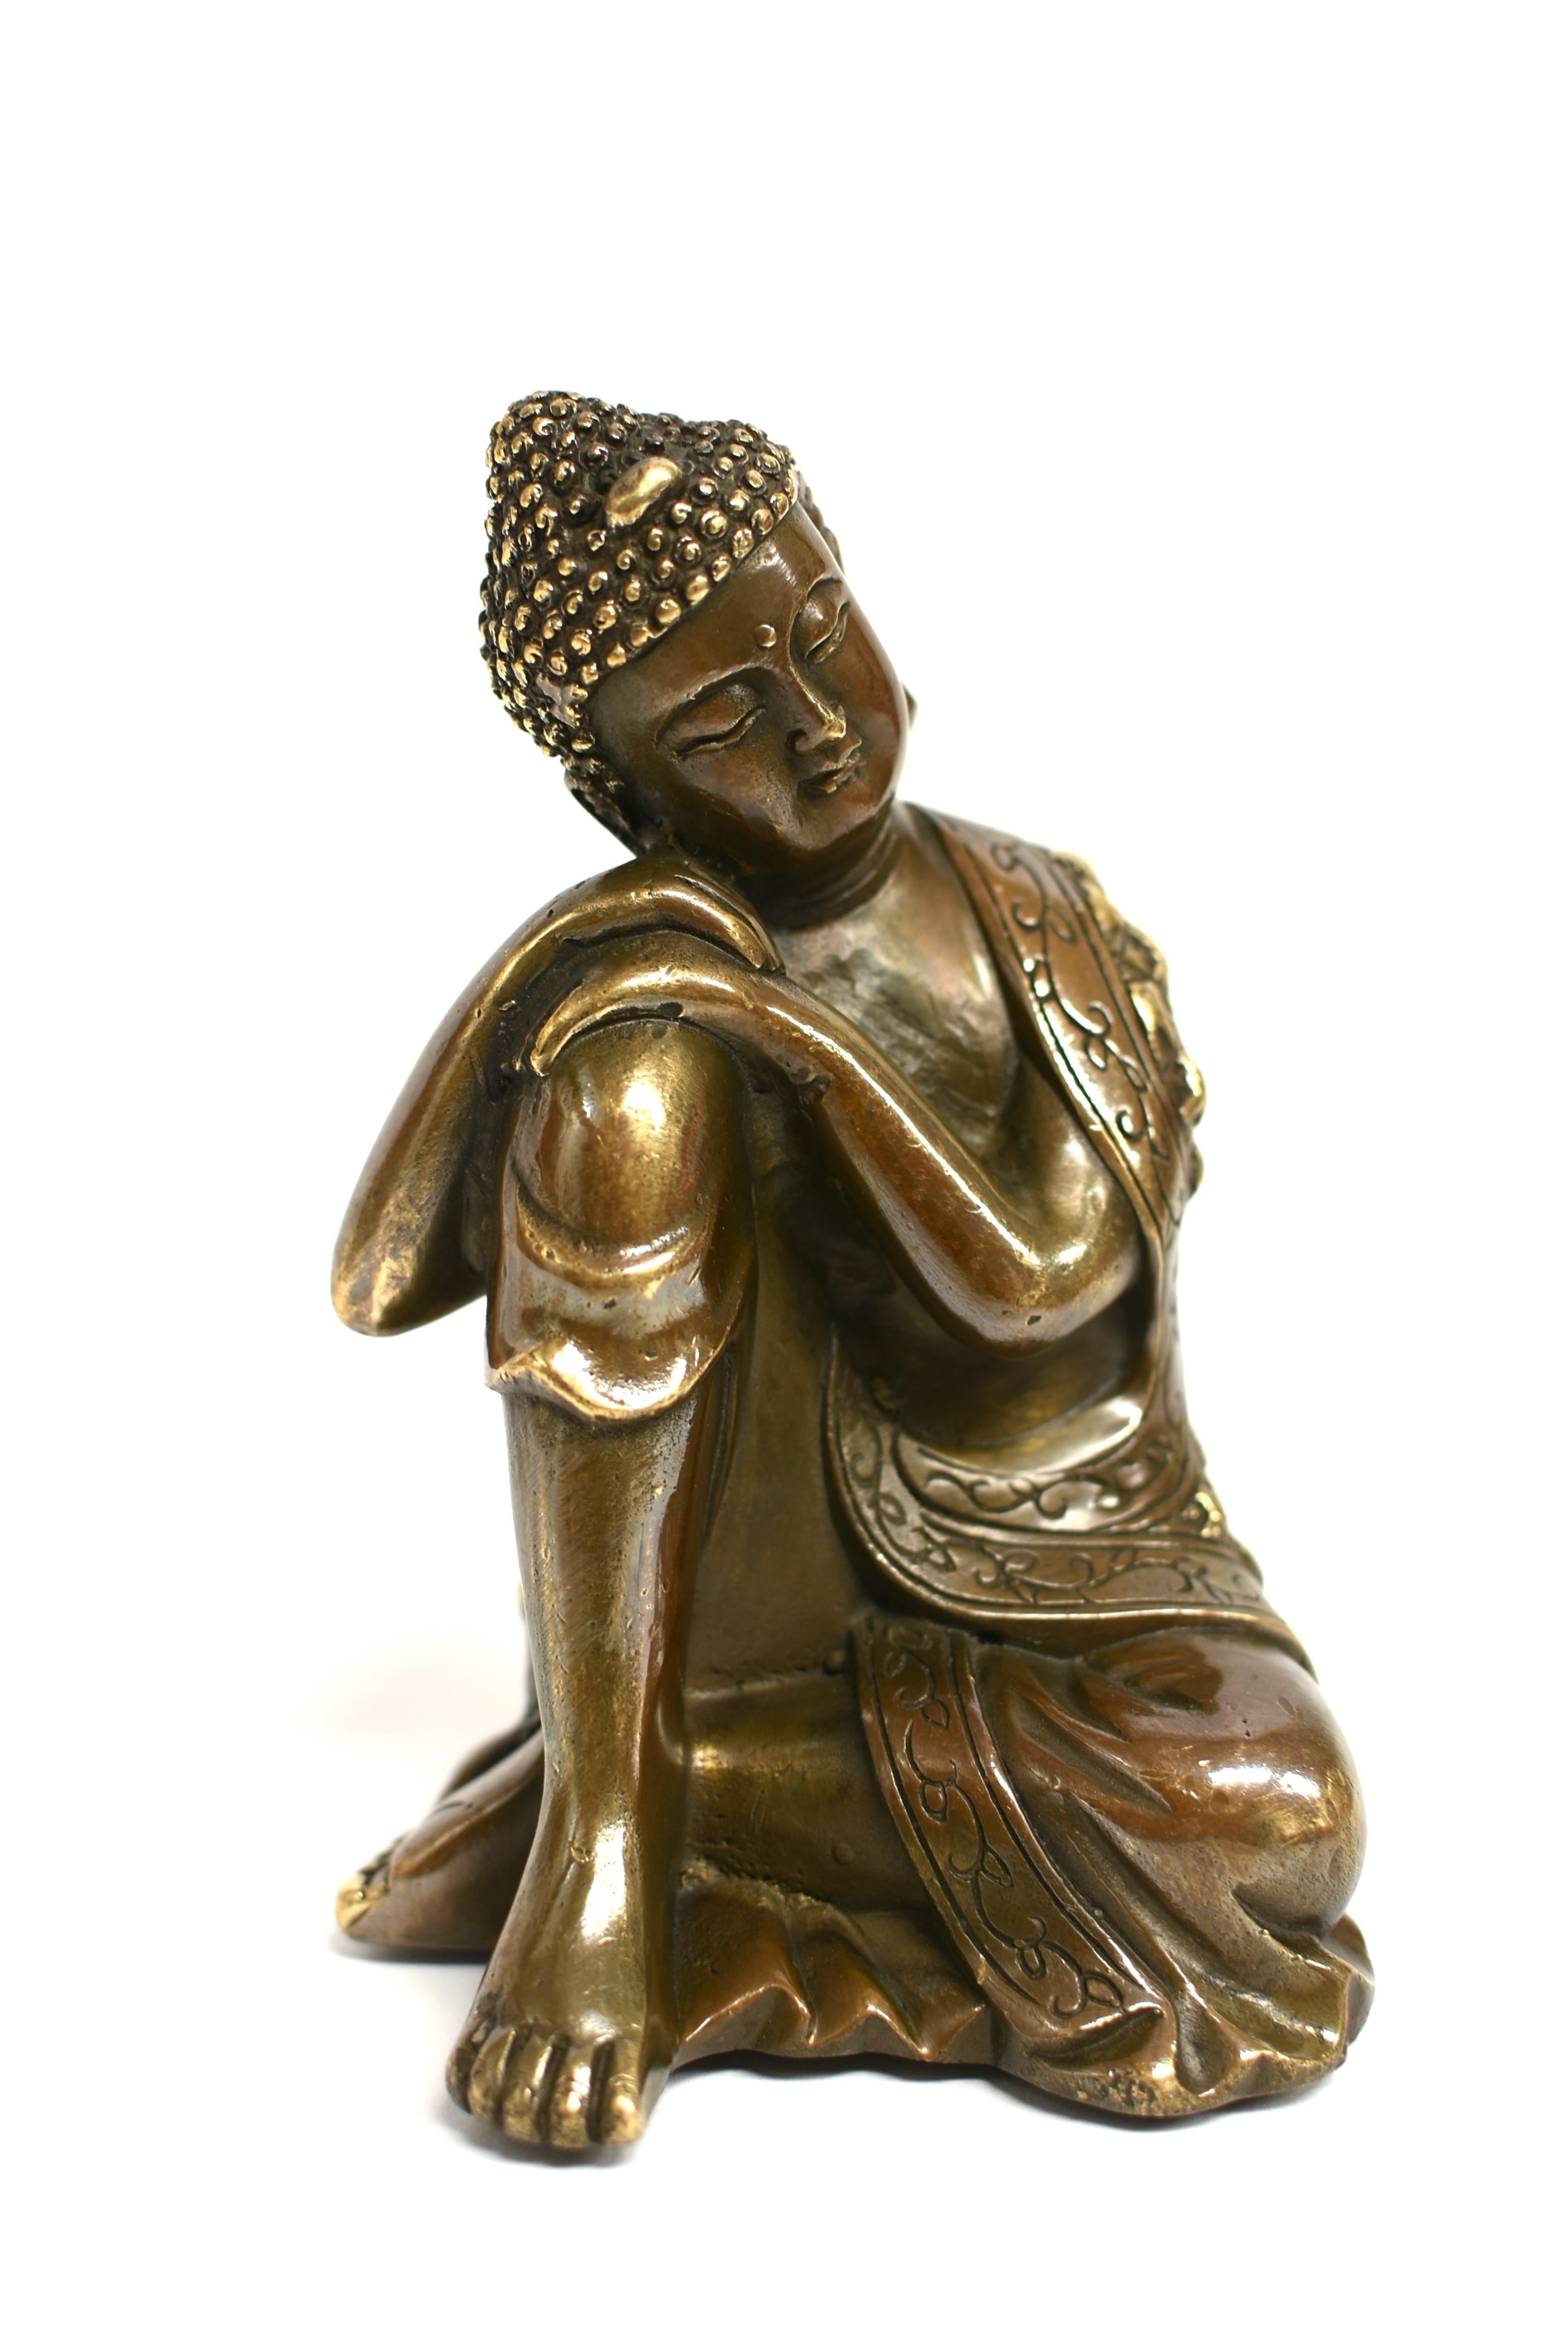 Eine schöne Bronzestatue, die Buddha in kontemplativer Haltung darstellt. Das breite Gesicht mit den geschlossenen Augen strahlt eine heitere Aura aus, umrahmt von langen Ohren, unter dem gewundenen Haar und gekrönt von einer Uschnisha. Buddha trägt